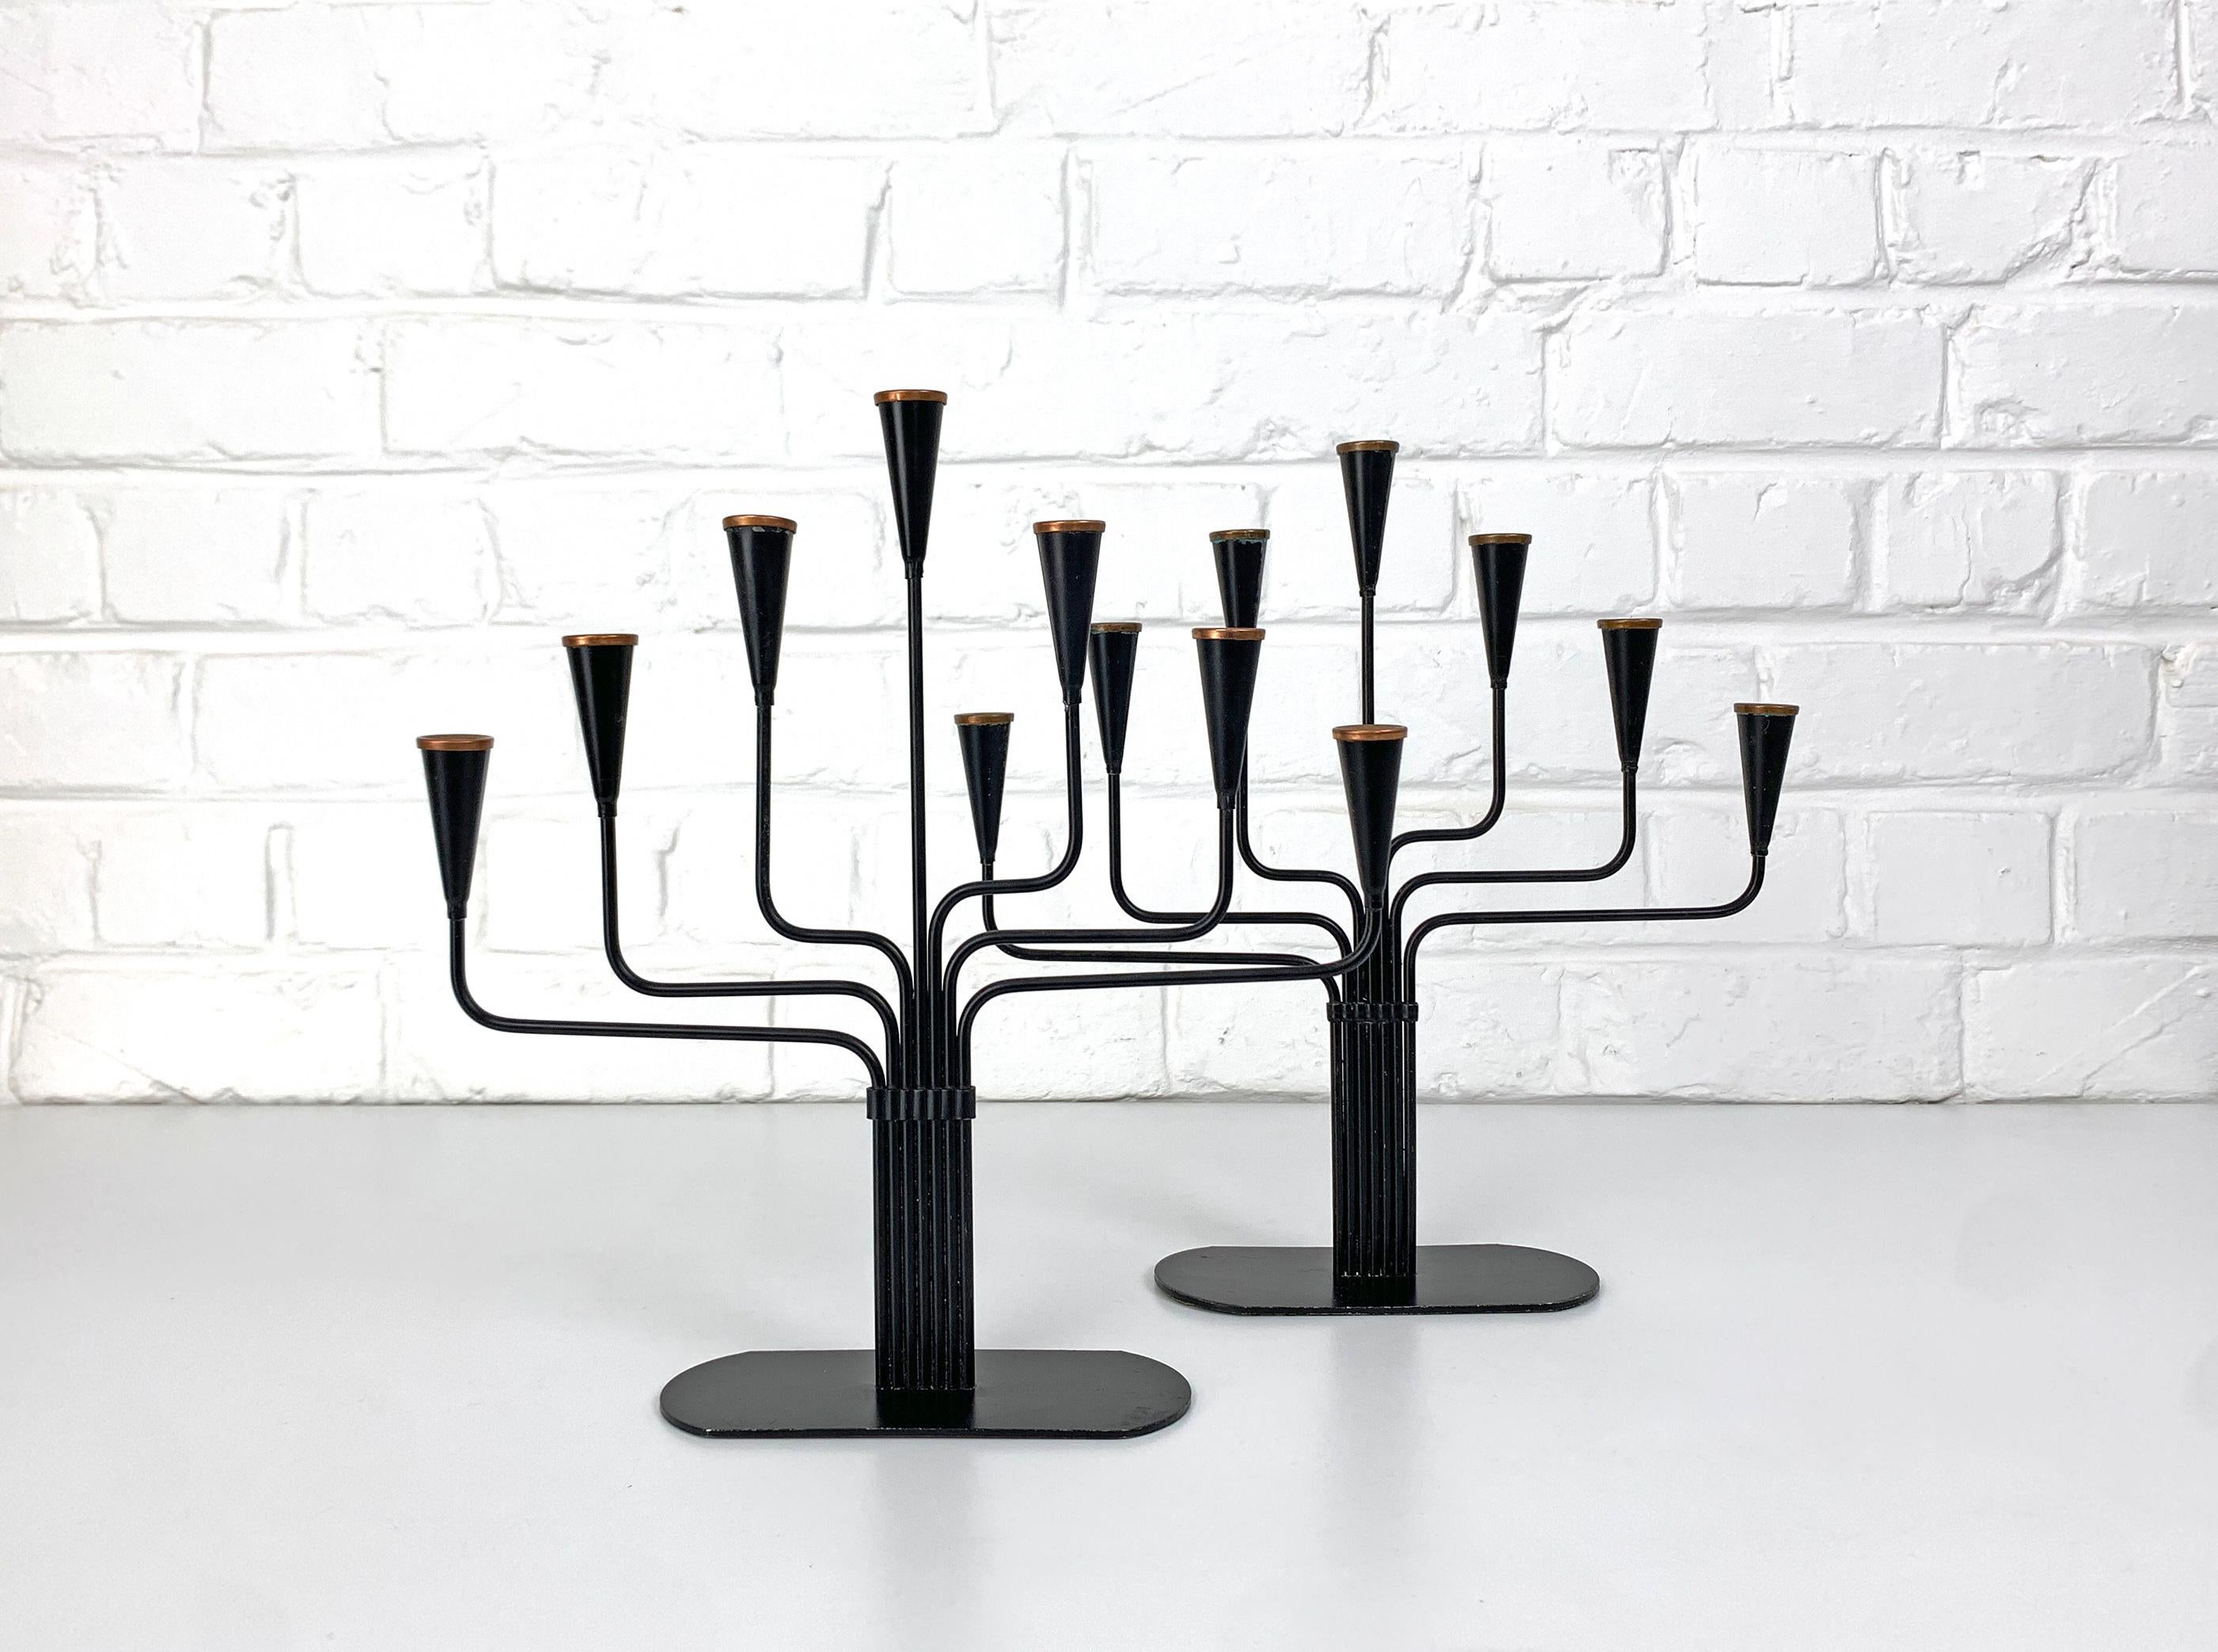 Ein Paar schwedische modernistische Kerzenhalter für 7 Kerzen, entworfen von Gunnar Ander. Produziert von Ystad-Metall in der schwedischen Stadt Ystad. 

Aus Stahl, schwarz lackiert, mit Kupferringen an der Spitze.

Gunnar Ander ist ein schwedischer